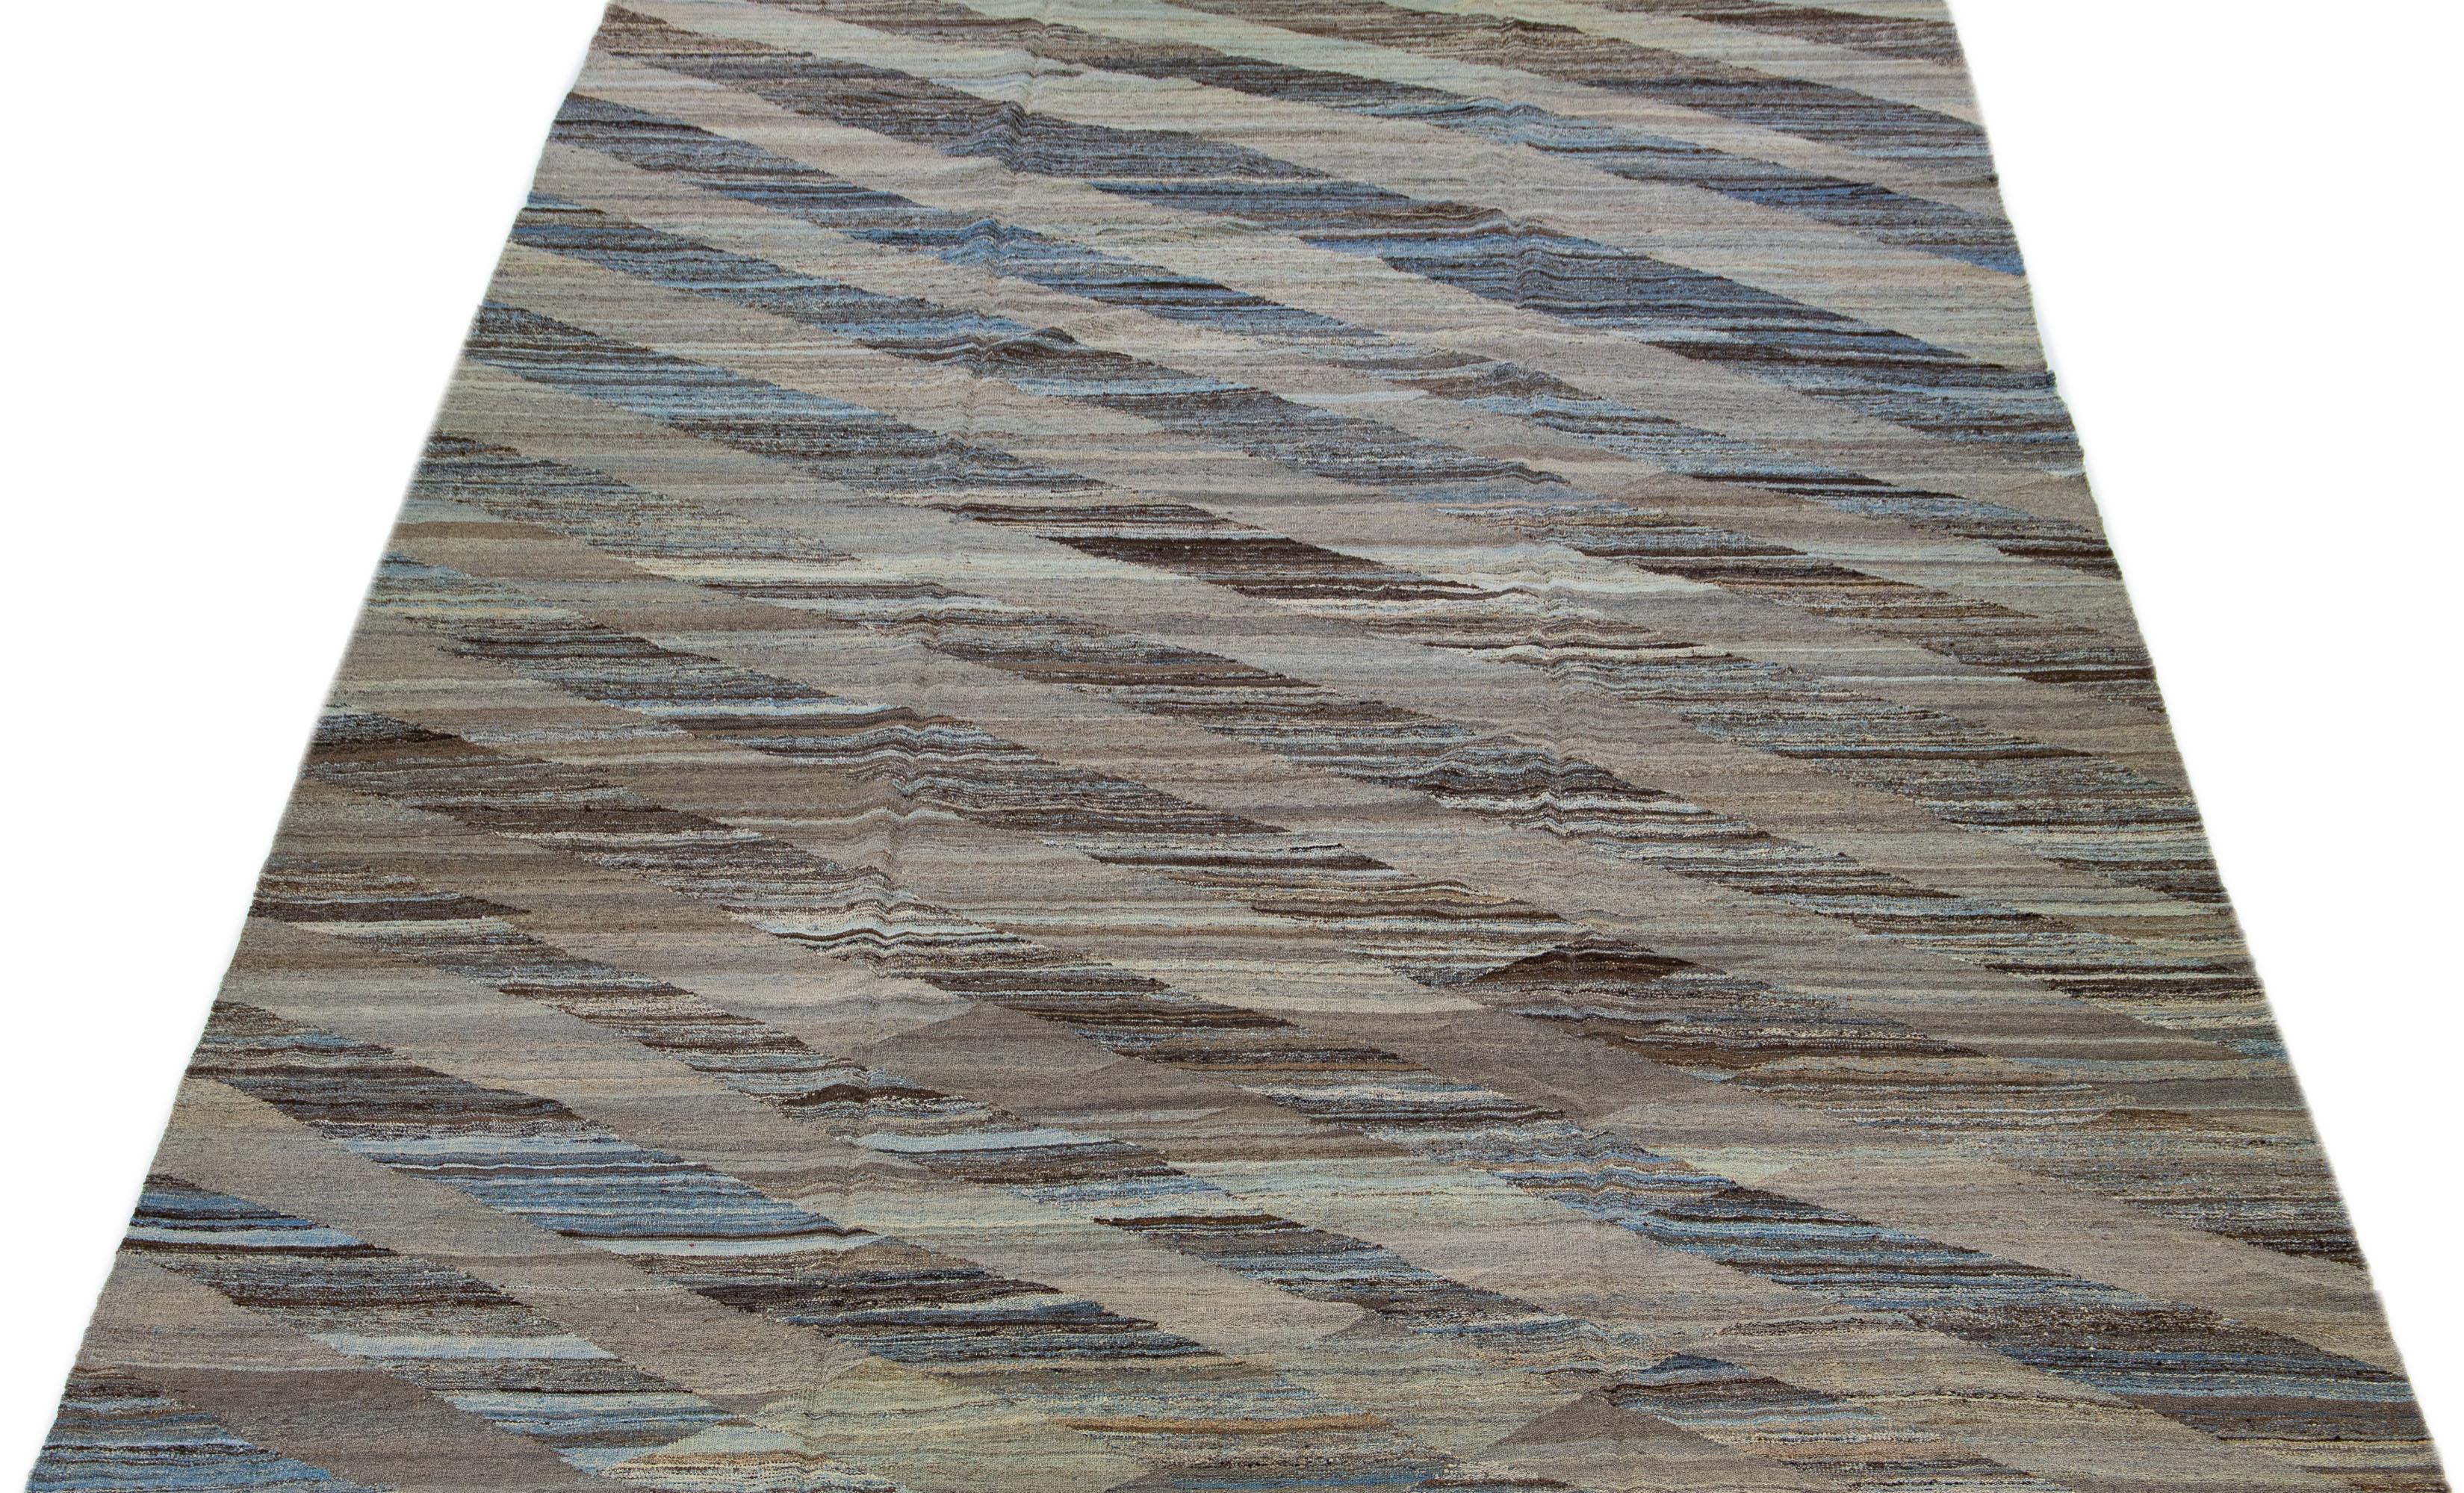 Der sorgfältig gefertigte Kilim-Teppich besticht durch sein modernes Design mit einem dominanten braunen Feld, das durch abstrakte geometrische Muster in Blautönen akzentuiert wird.

Dieser Teppich misst 10'8